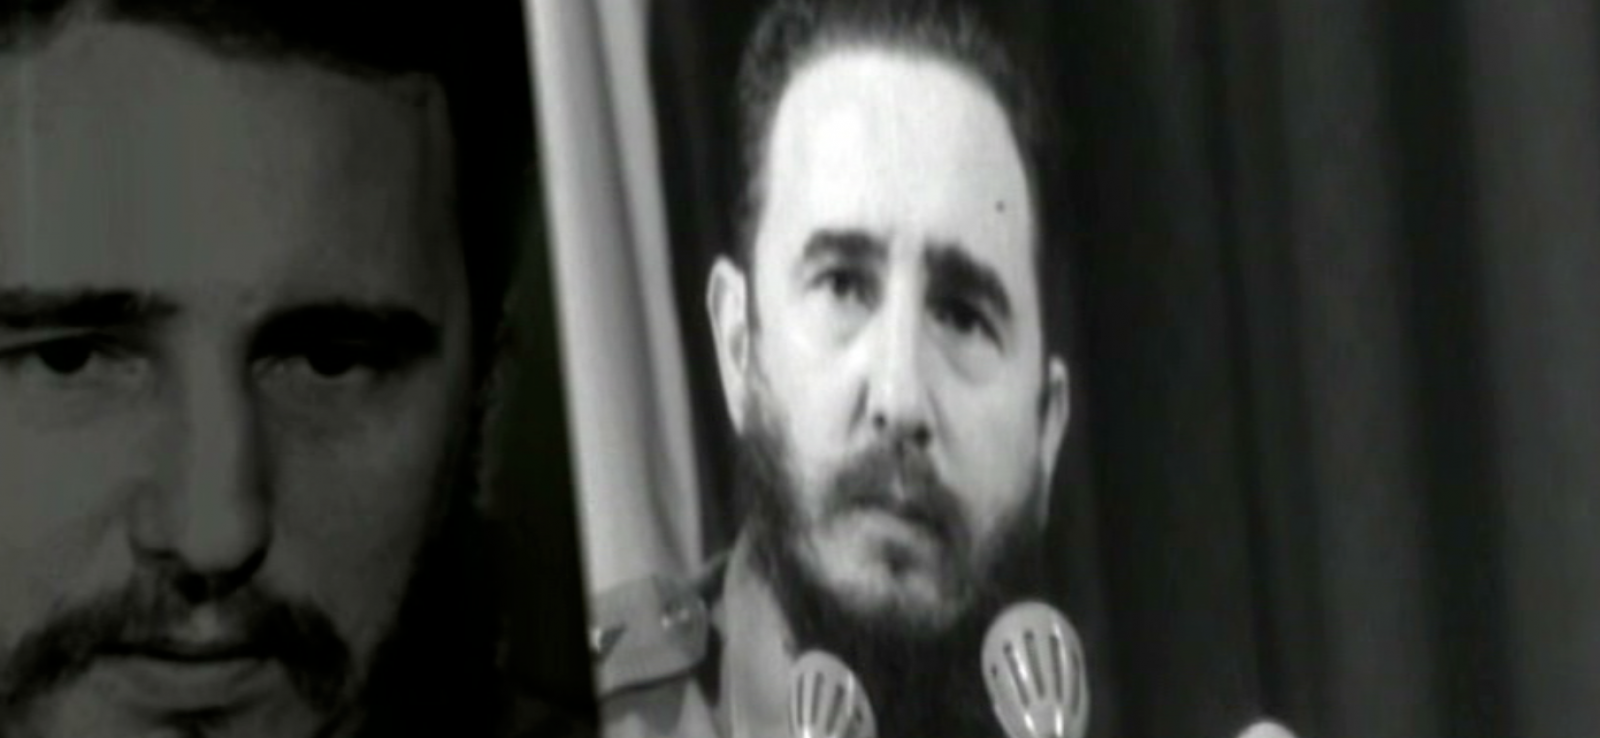 Fidel Castro fue uno de los líderes mundiales del Siglo XX que destacó por sus discursos cautivadores y el poder de su palabra